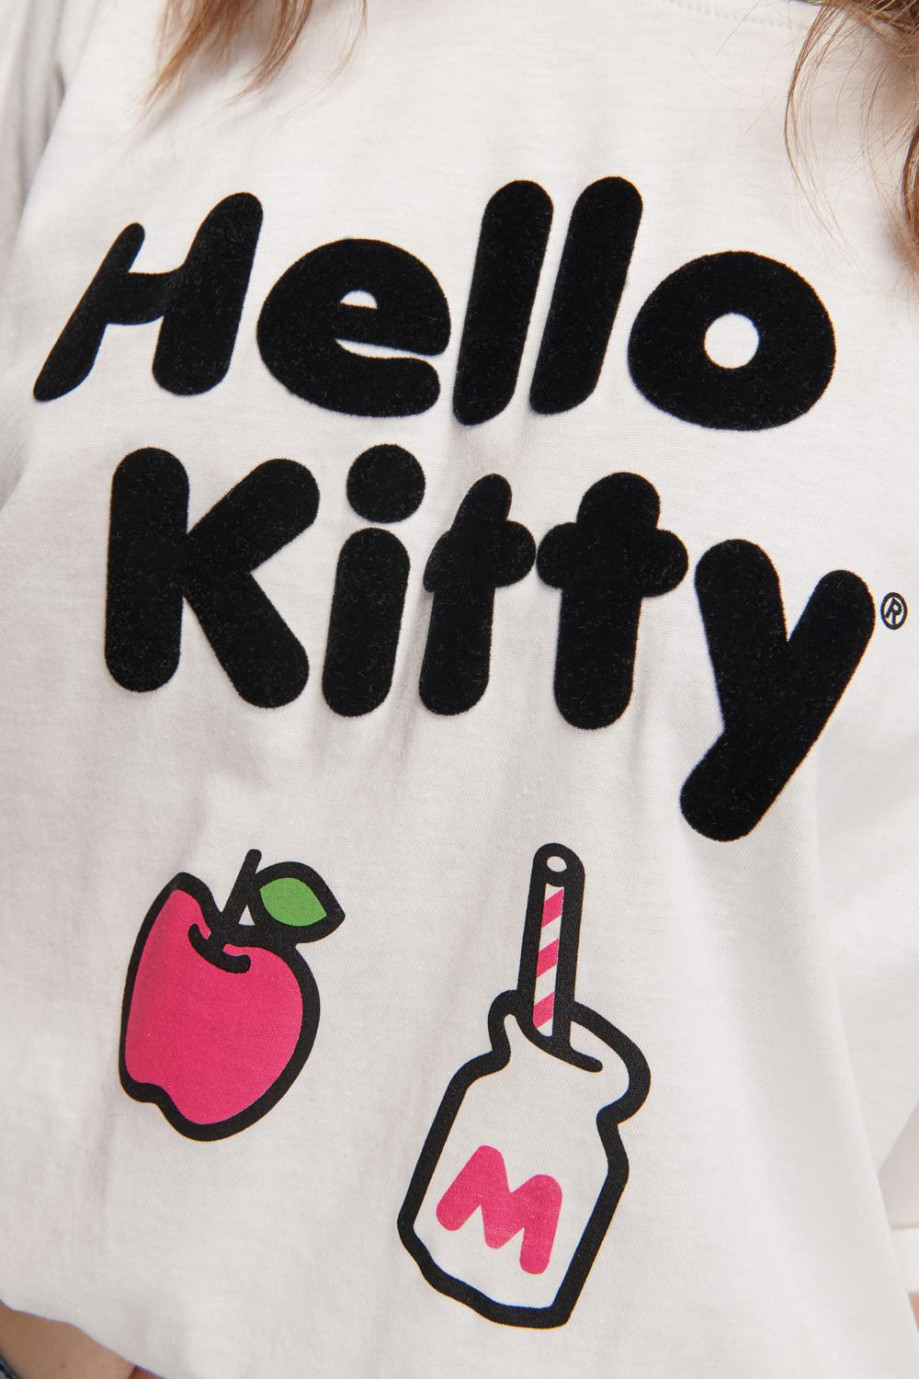 Camiseta manga corta, estampado de Hello Kitty